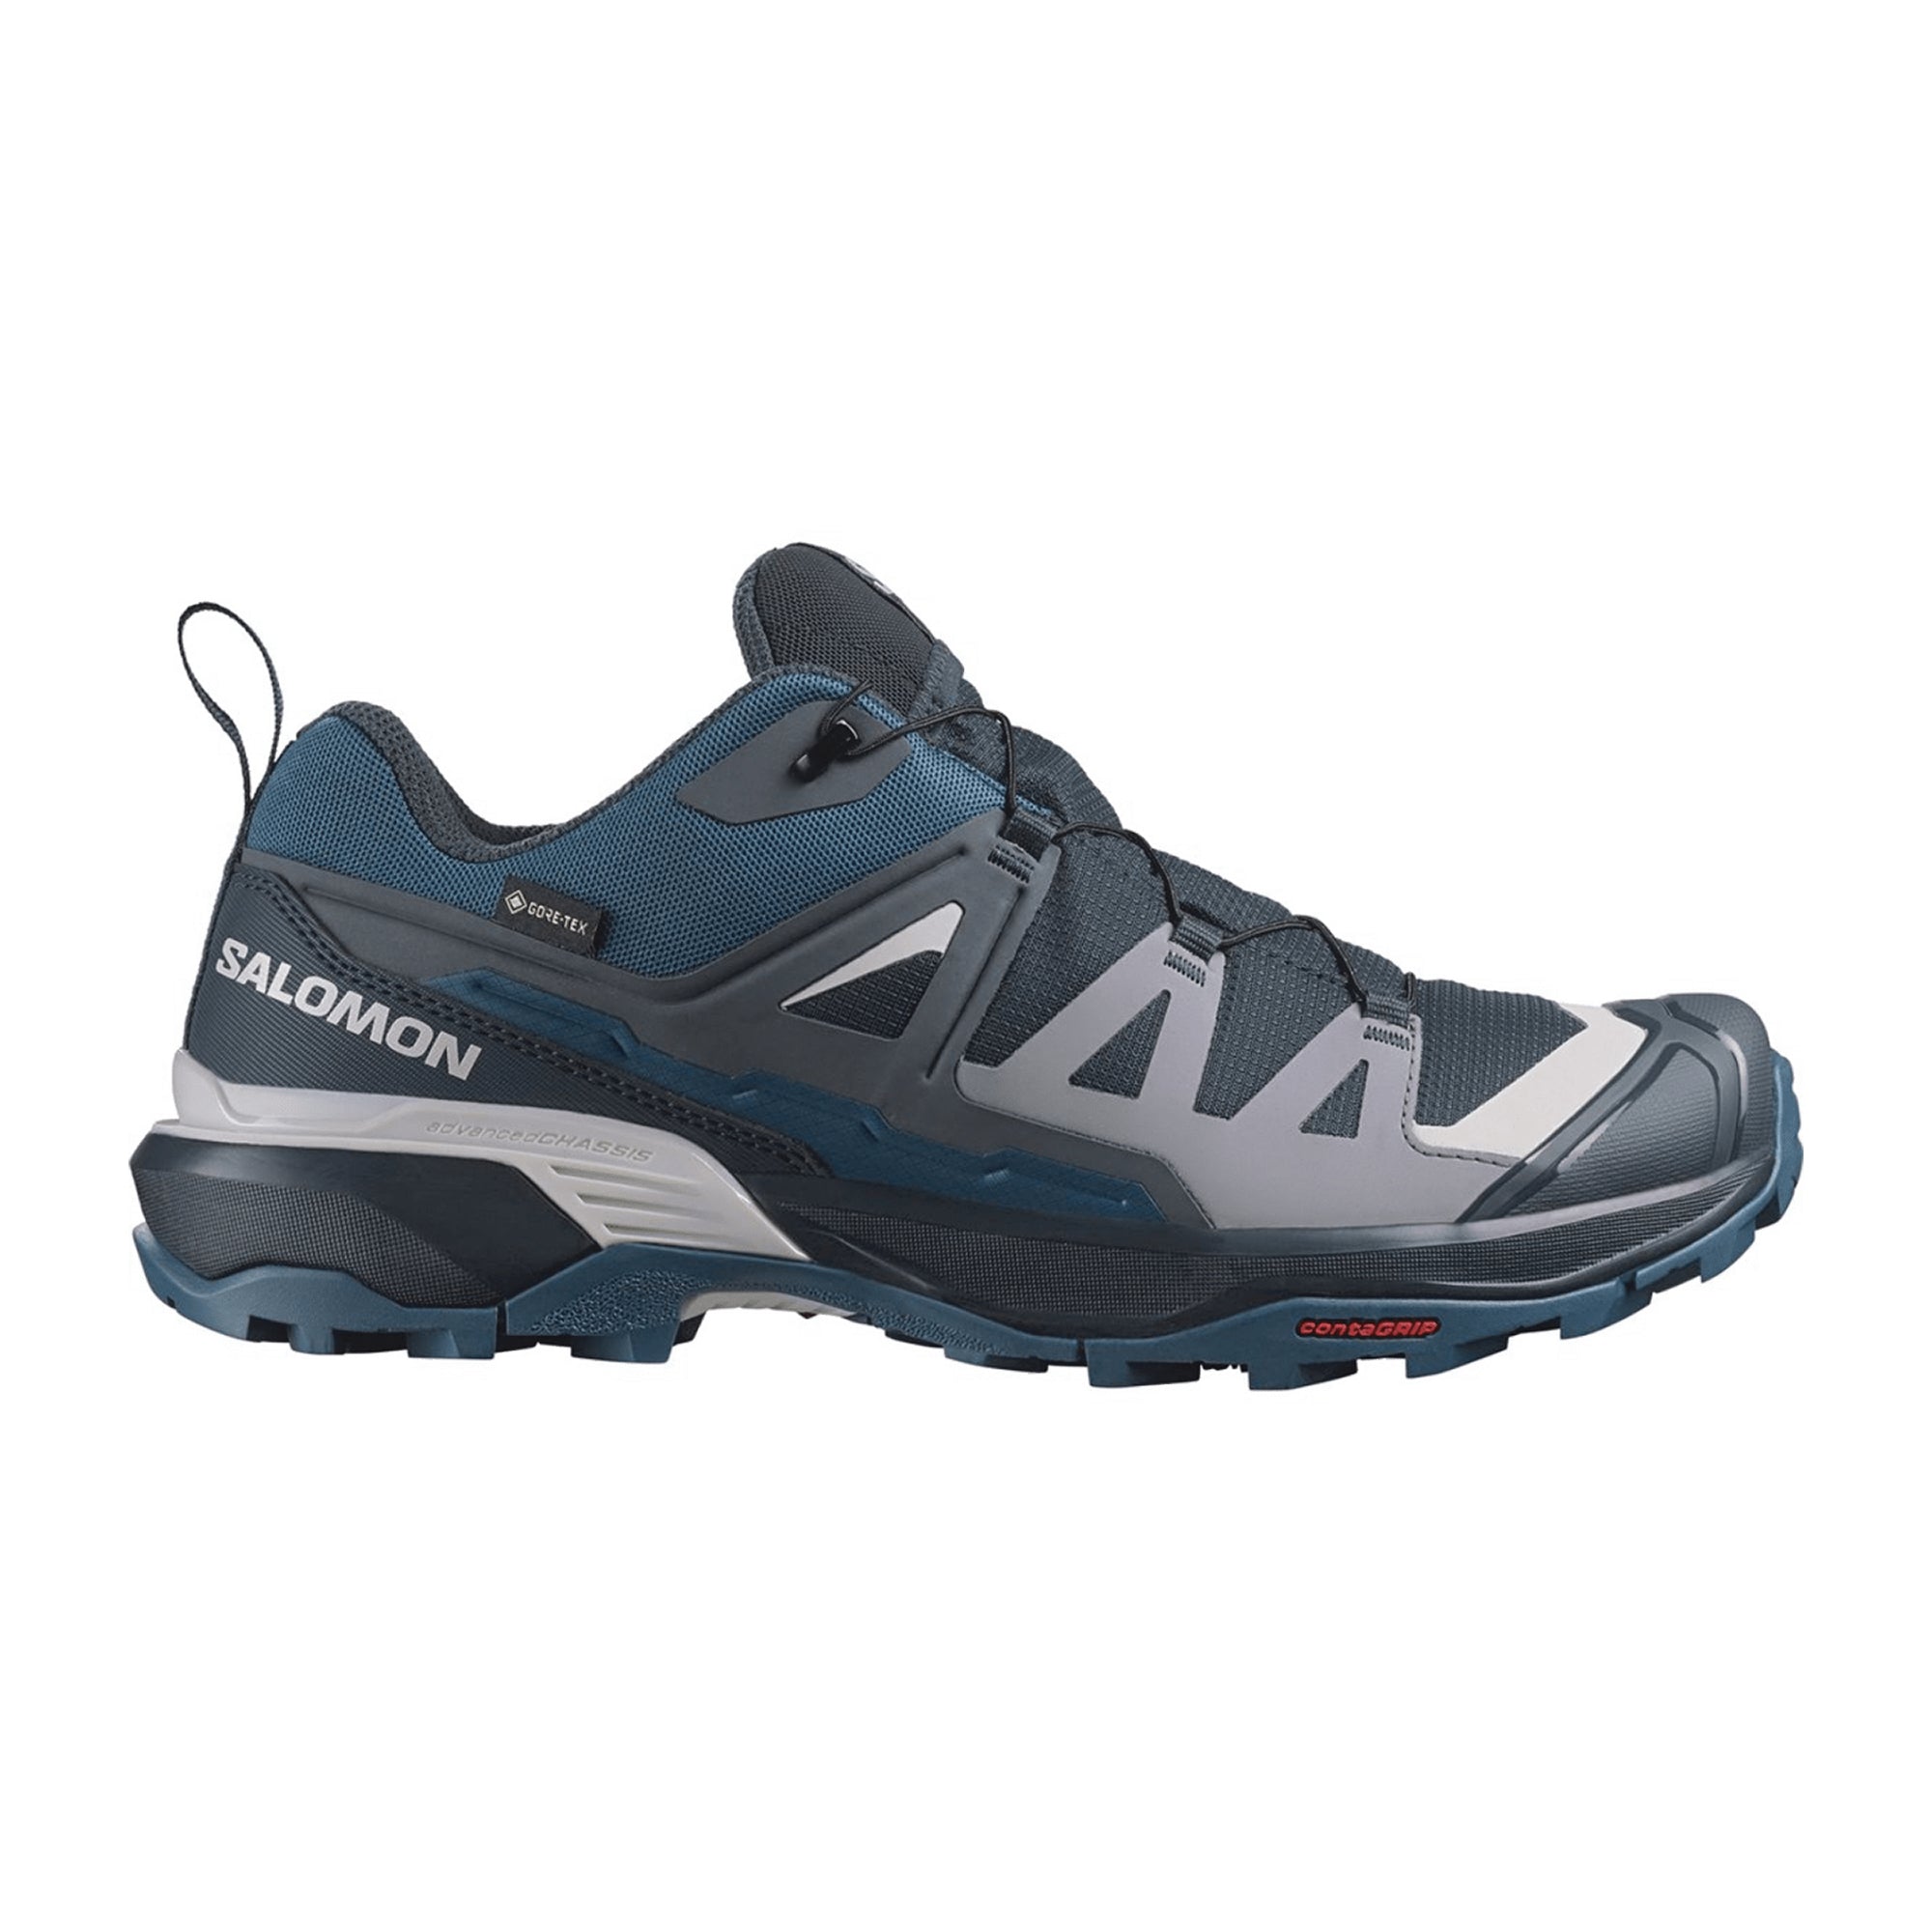 Salomon X ULTRA 360 GTX for men, blue, shoes